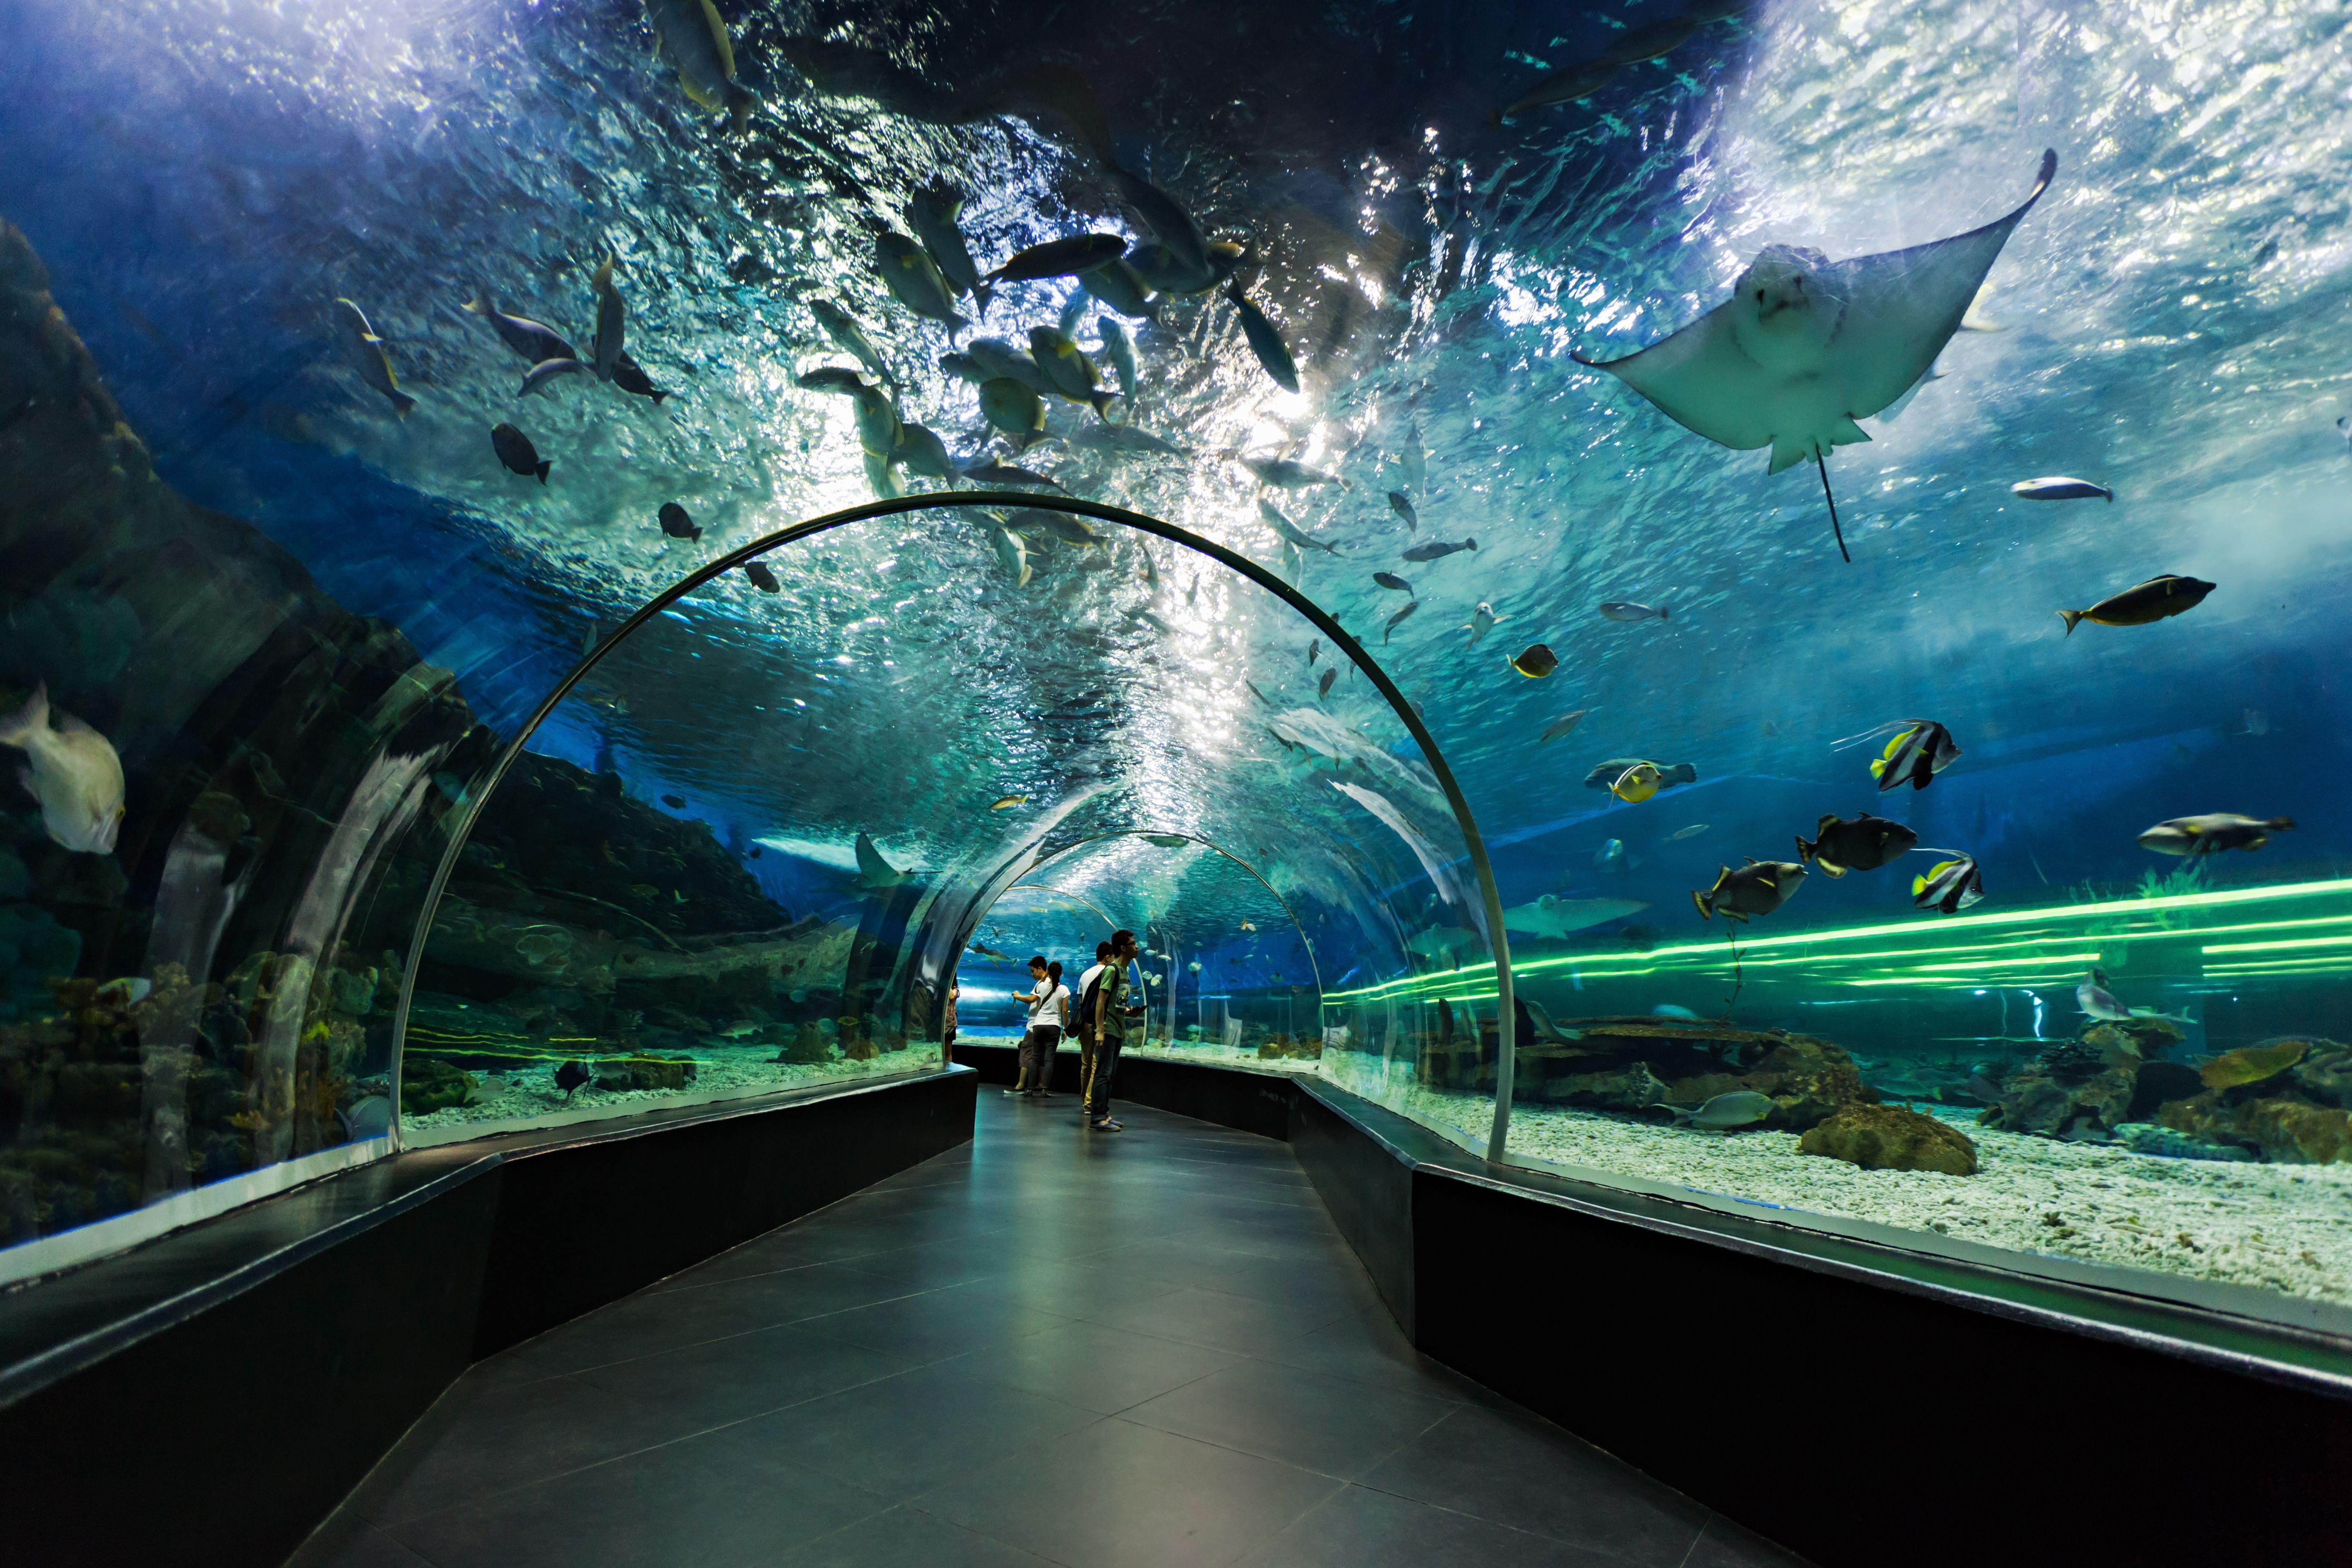 Plan Your Visit to Dubai Aquarium & Underwater Zoo